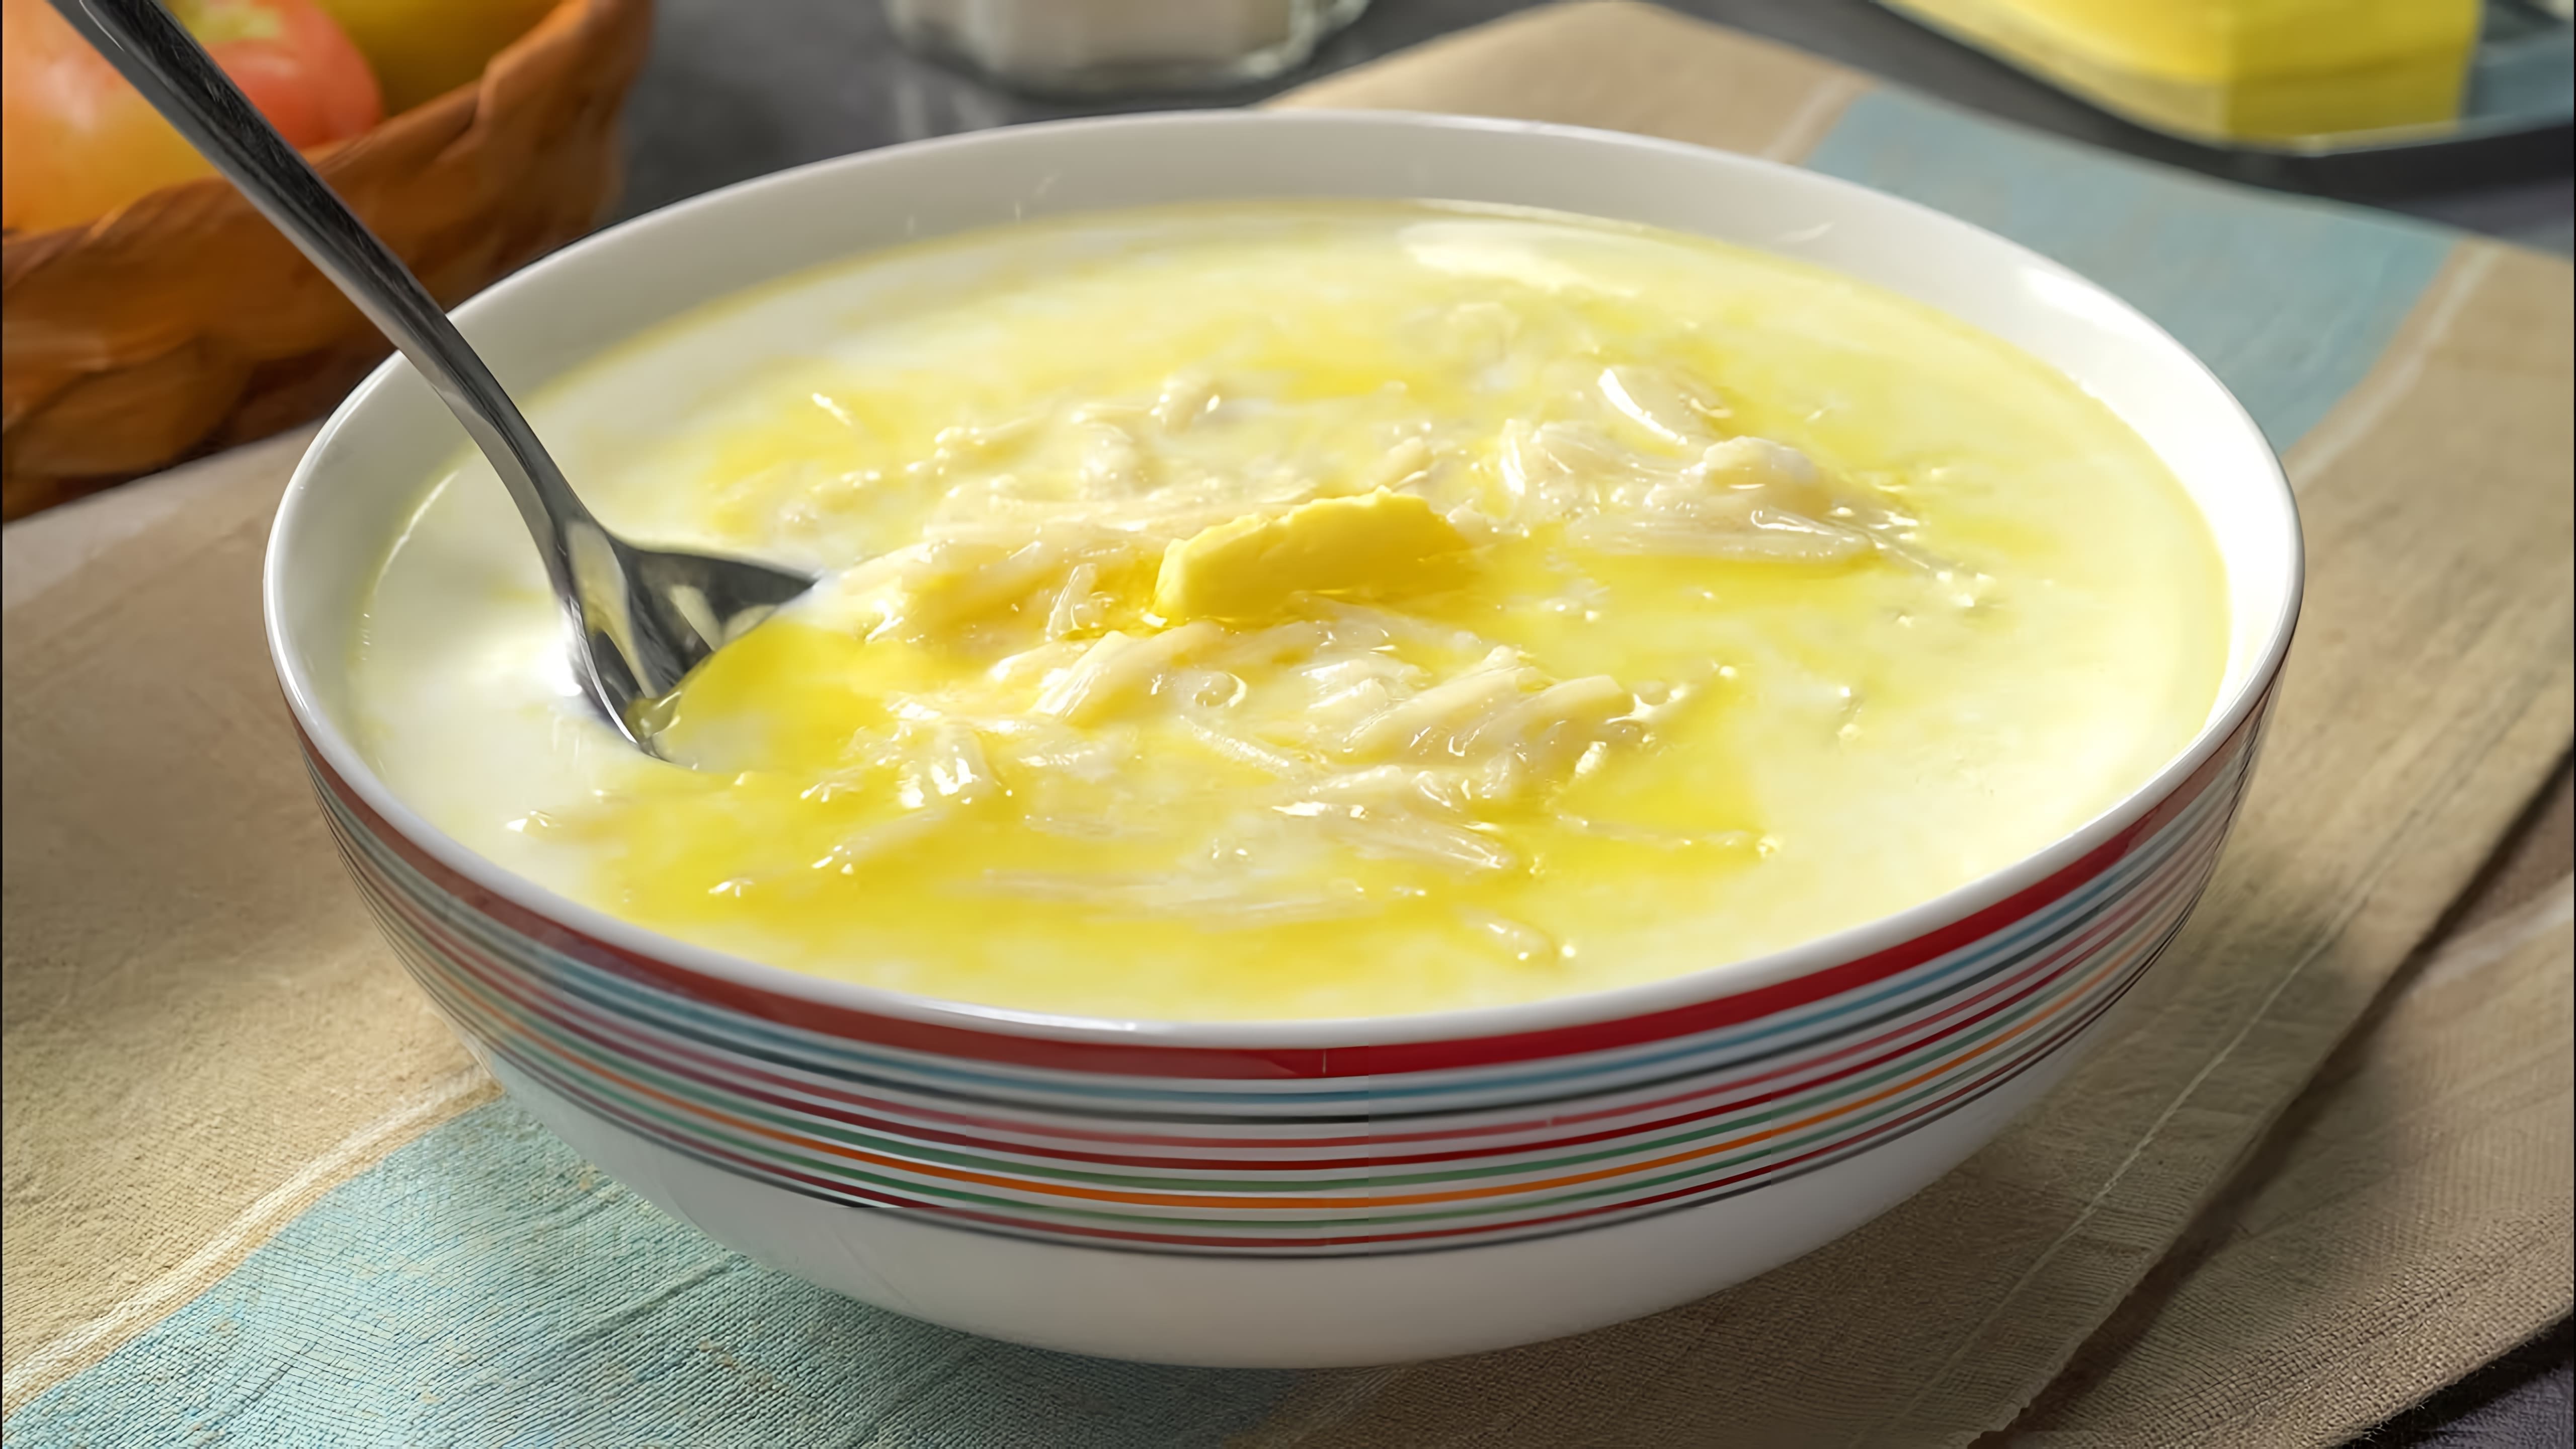 МОЛОЧНЫЙ СУП С ВЕРМИШЕЛЬЮ - любимый вкус детства! Рецепт от Всегда Вкусно!

В этом видео-ролике вы увидите, как приготовить молочный суп с вермишелью